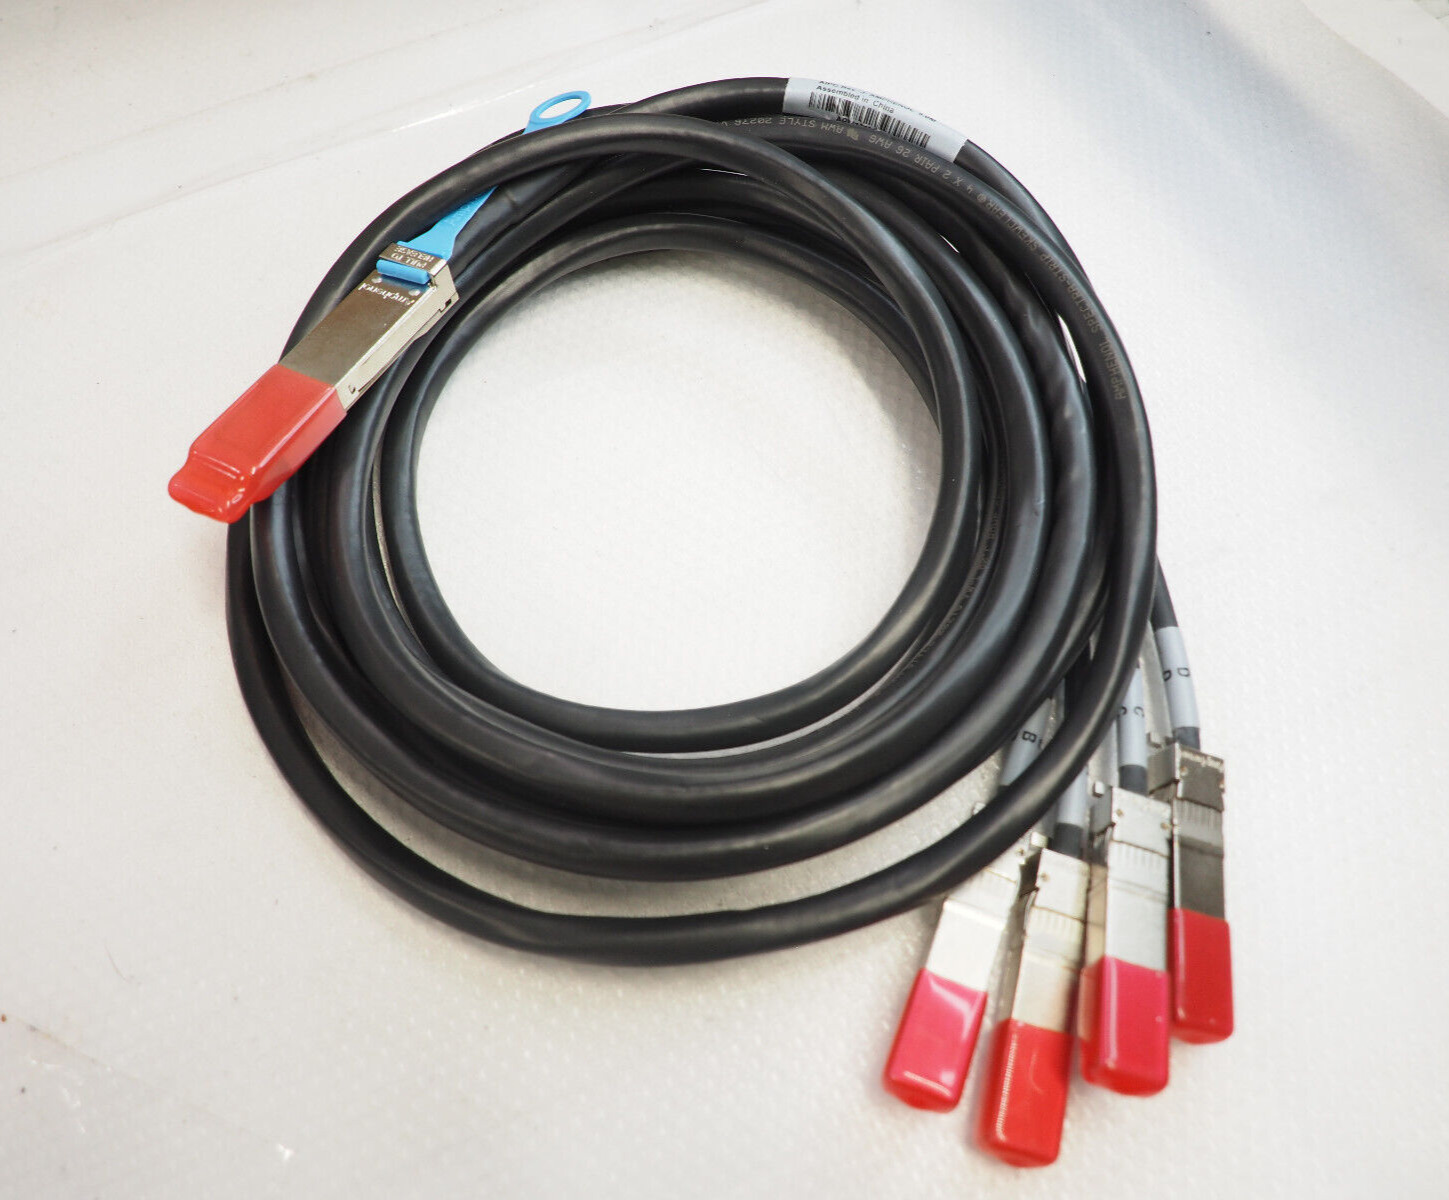 AMPHENOL SF-QSFP4SFPPS-005 582410003 QSFP to 4 SFP+ Splitter 5m 16.4ft Cable